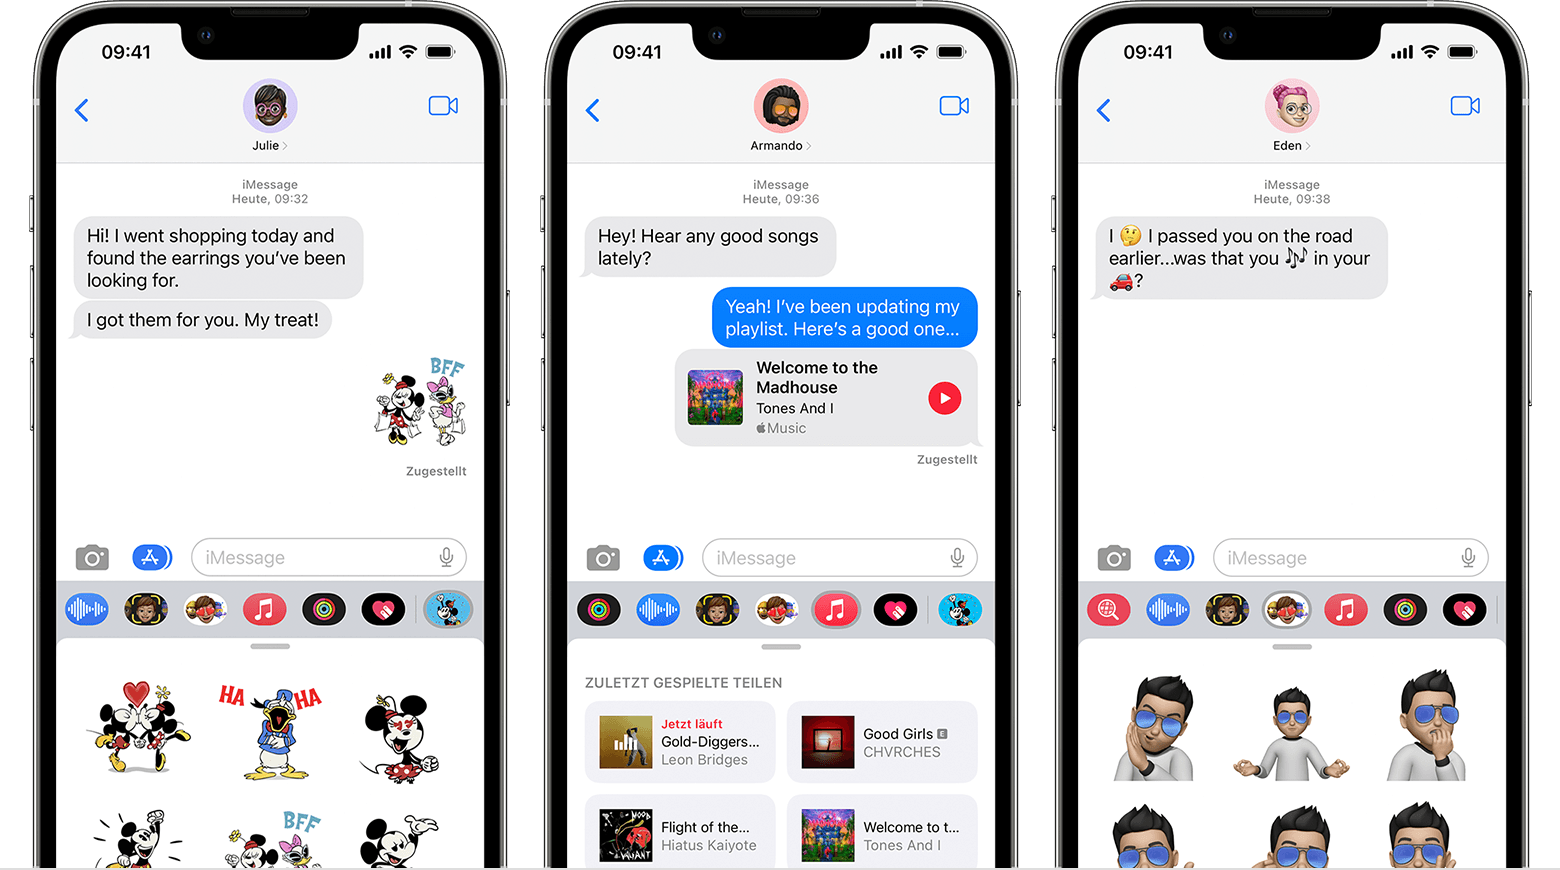 iPhone mit iMessage-Apps in einer Nachrichten-Konversation